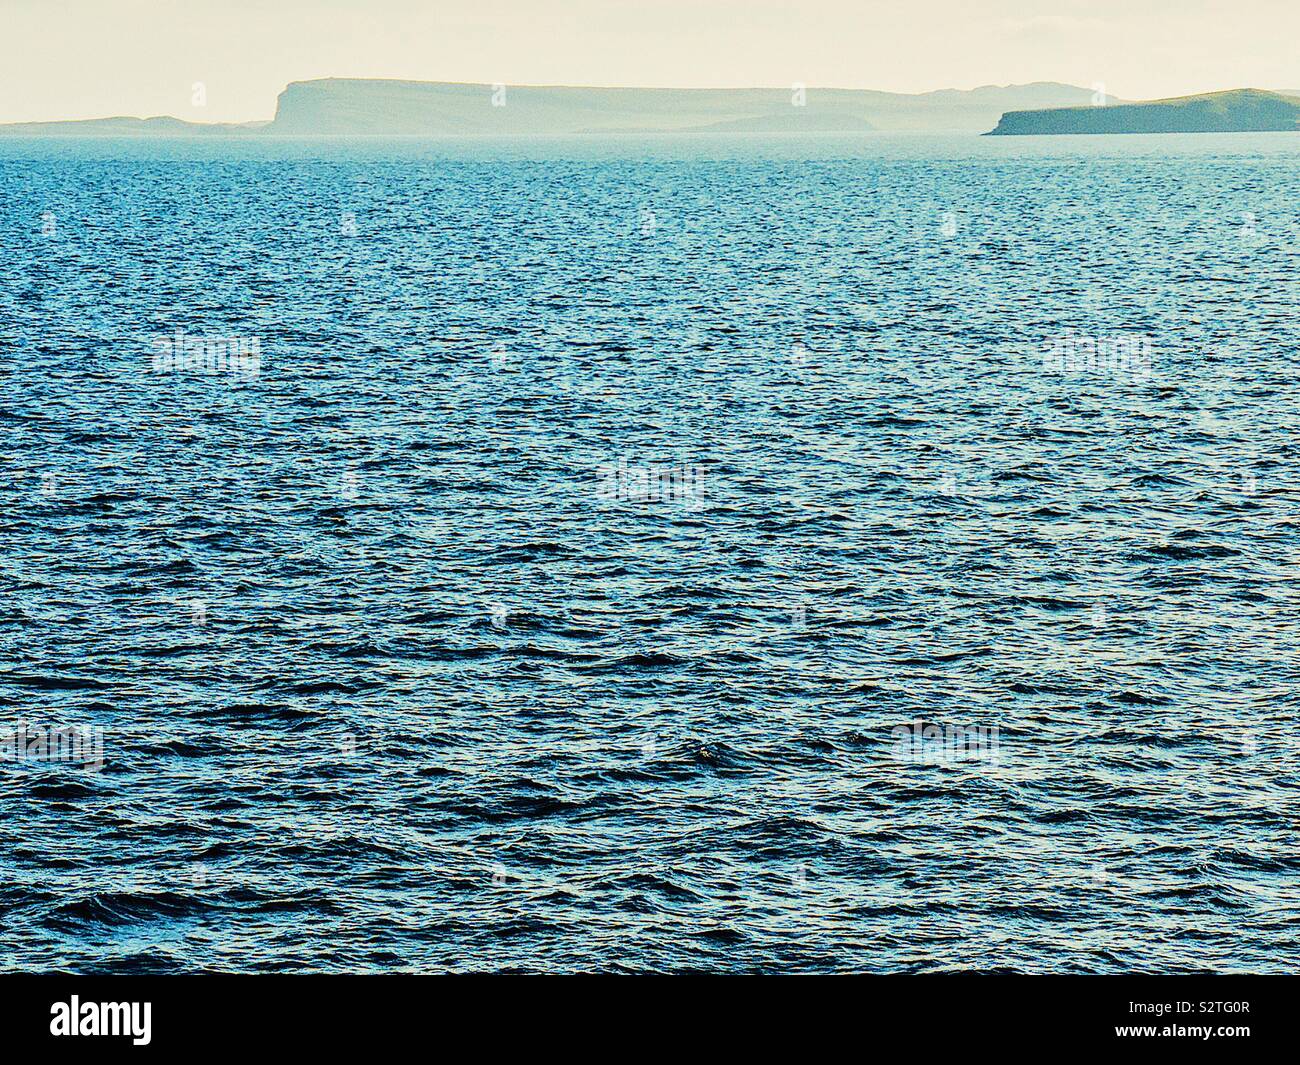 Vue de minimaliste bleu profond de la mer avec des contours d'îles à l'horizon Banque D'Images